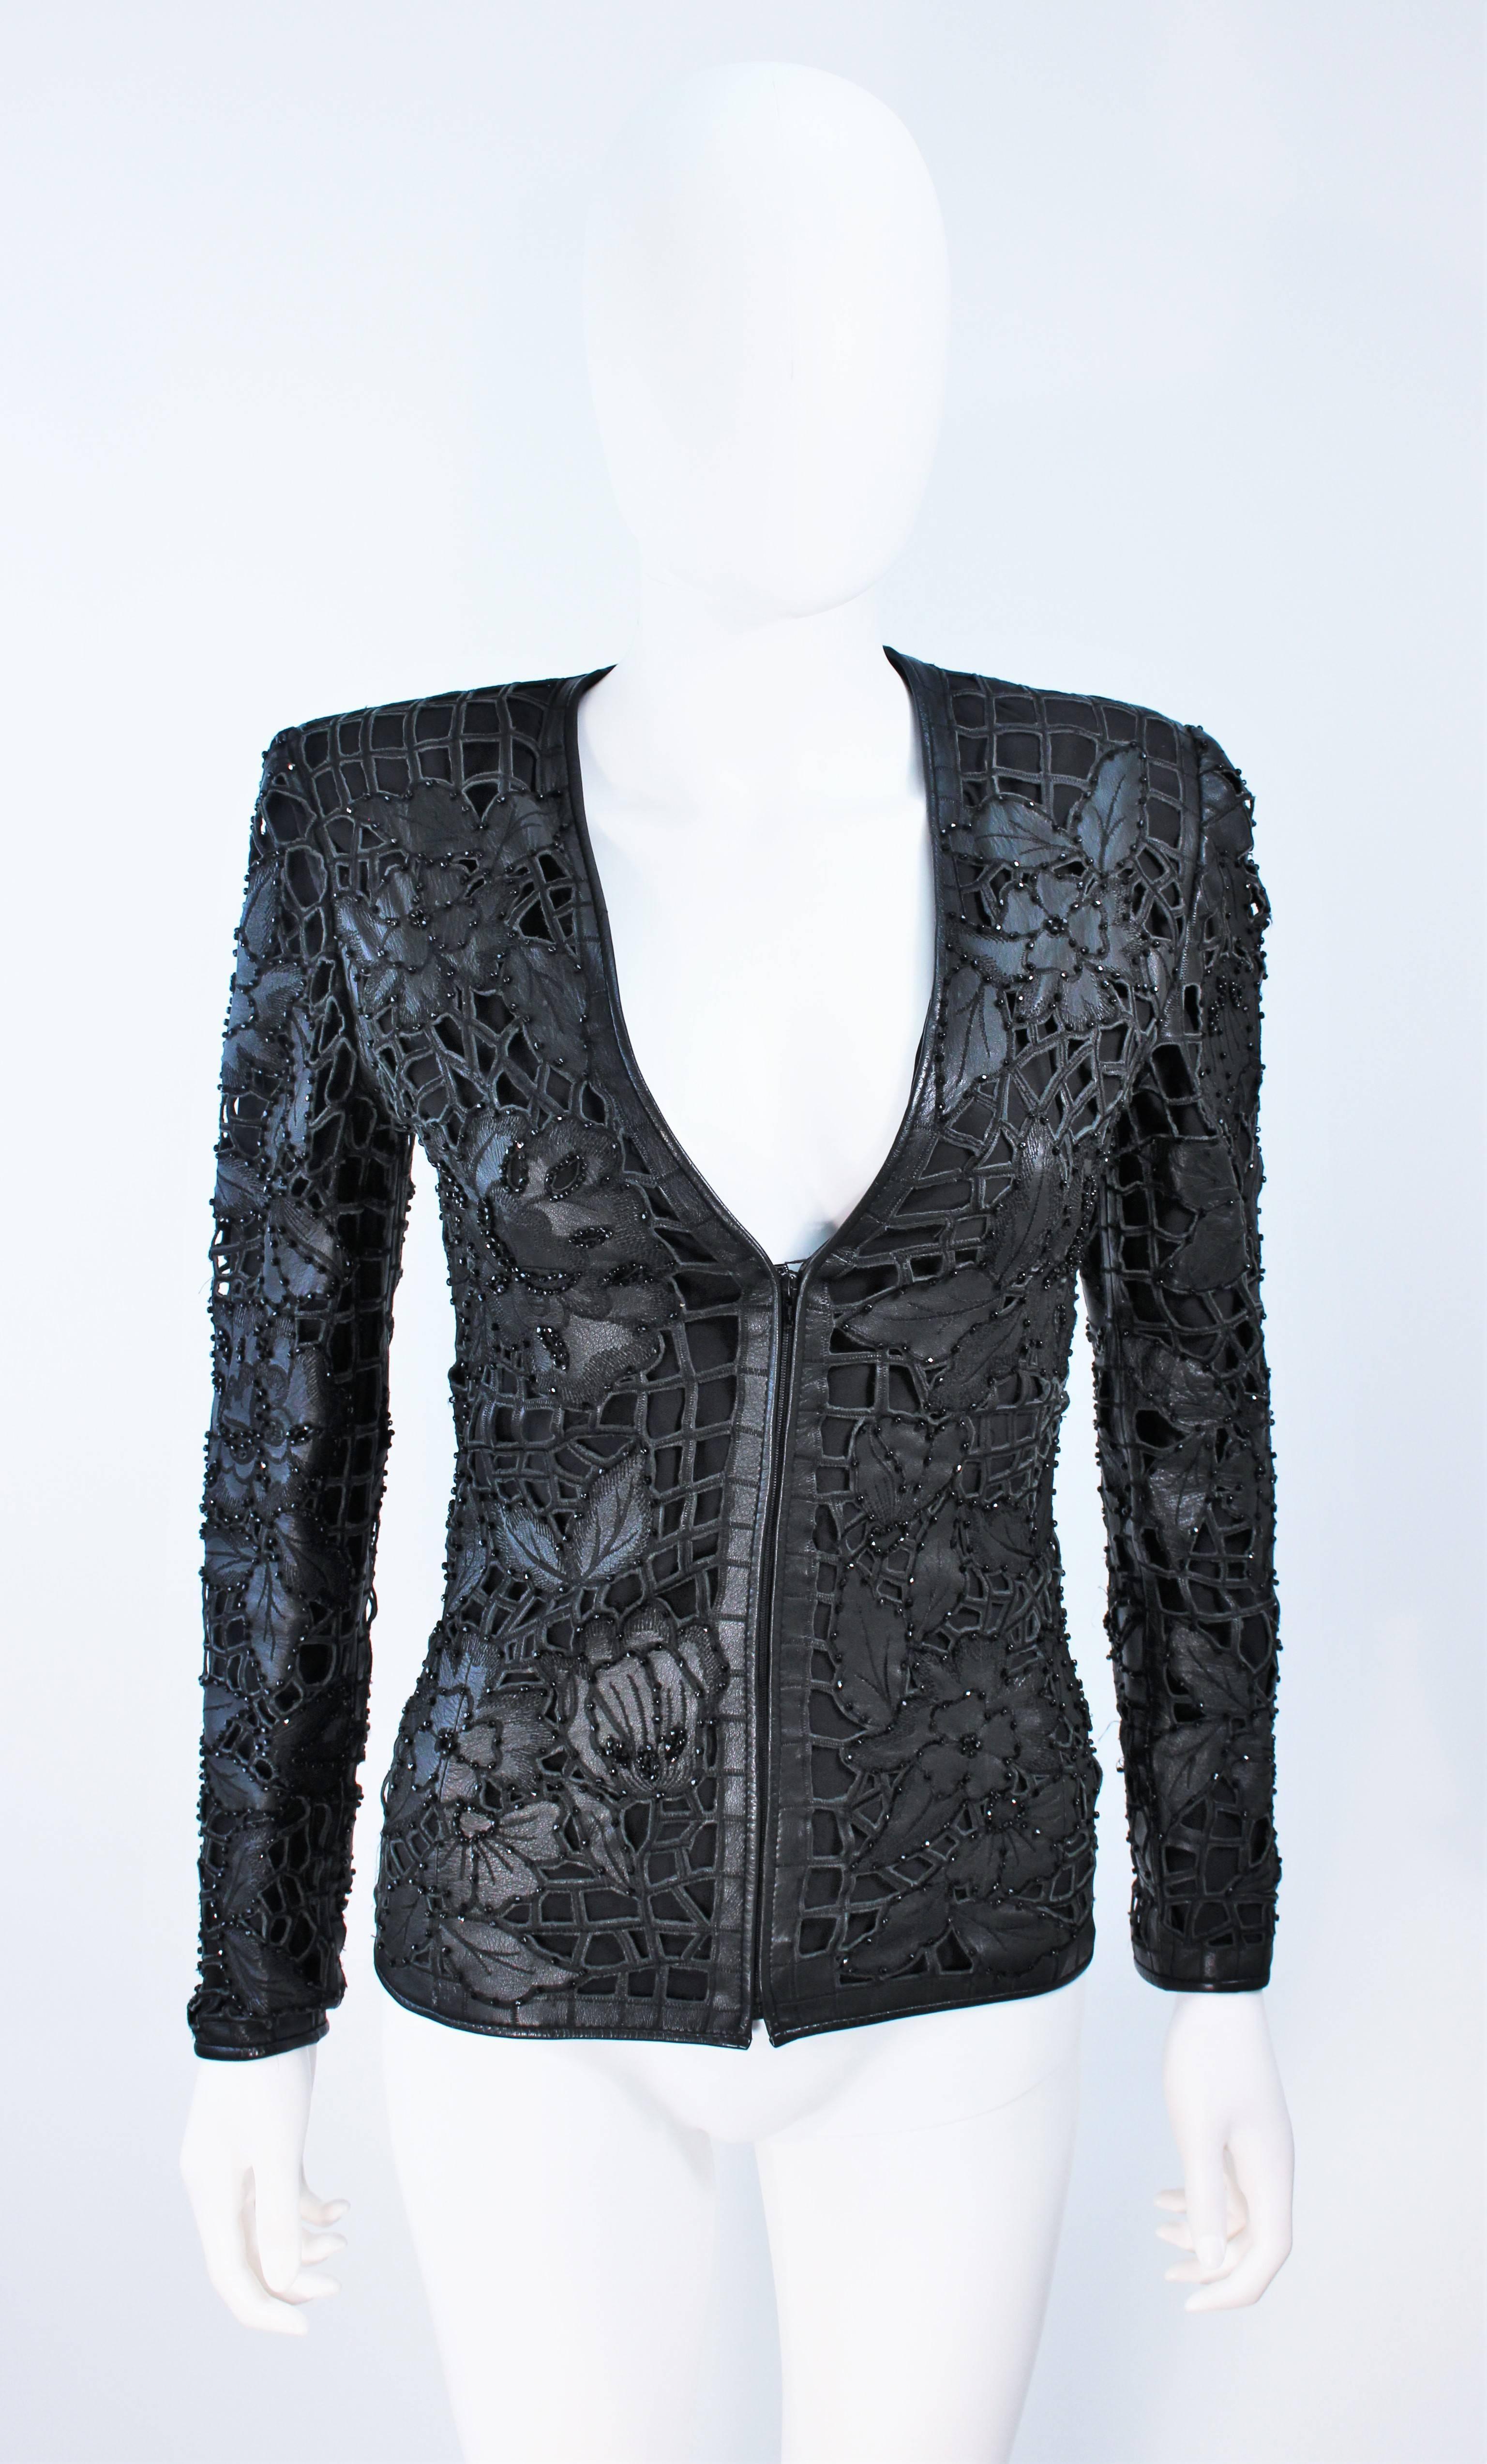  Cette veste Valentino est composée d'un cuir découpé avec un motif floral et des applications de perles à facettes noires sur l'ensemble du vêtement. Il y a une fermeture à glissière au centre du front. 
Vintage, en excellent état. 

  **Veuillez